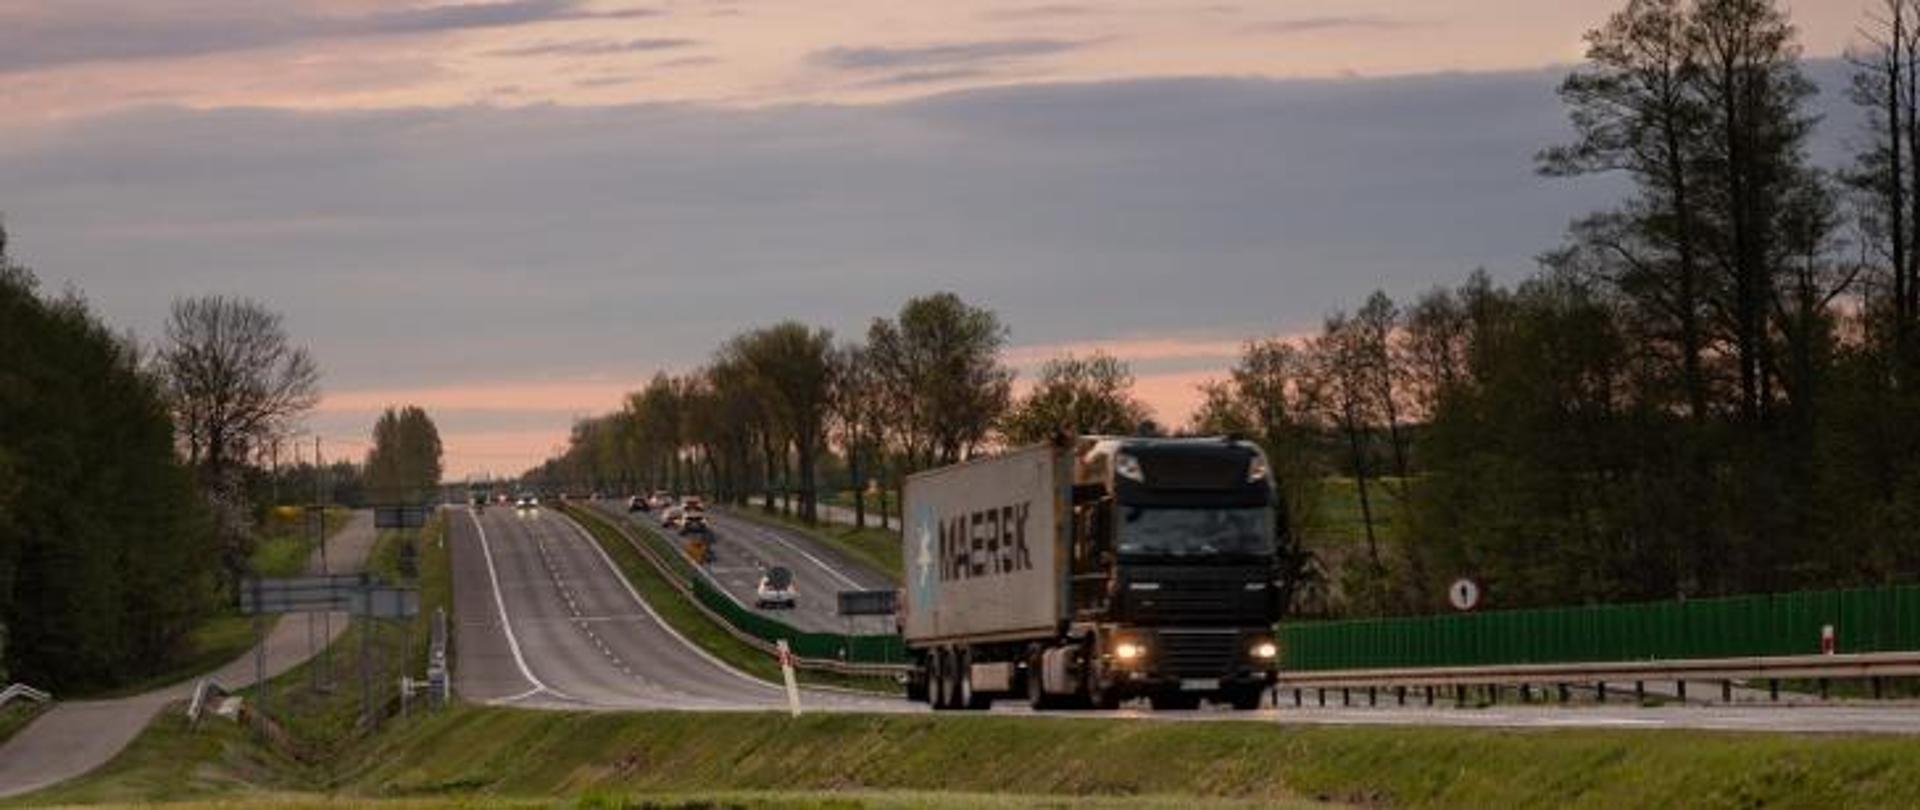 Droga ekspresowa o dwóch pasach dla każdego kierunku. Na pierwszym planie widoczna ciężarówka przewożąca kontener. W tle inne pojazdy, w tym także samochody osobowe.